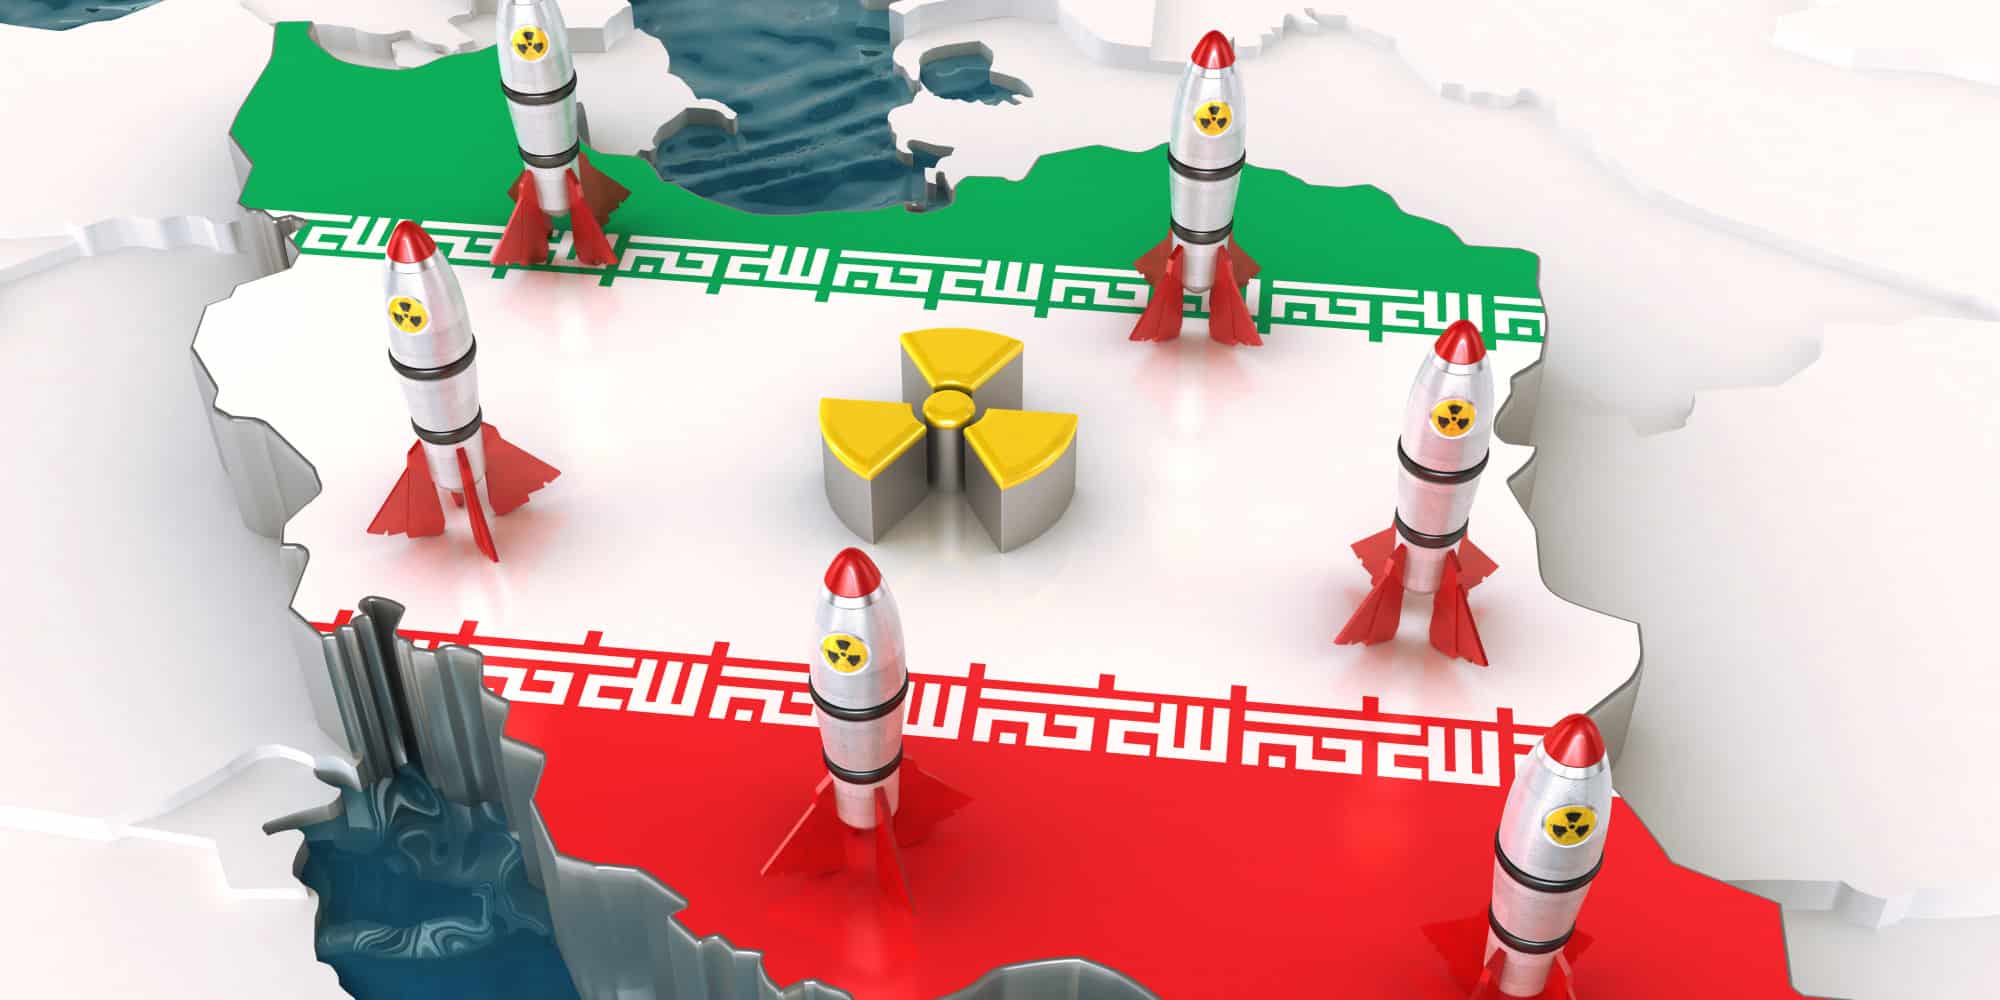 مقتل سليماني وأزمة الردع تسرعان إمتلاك إيران السلاح النووي